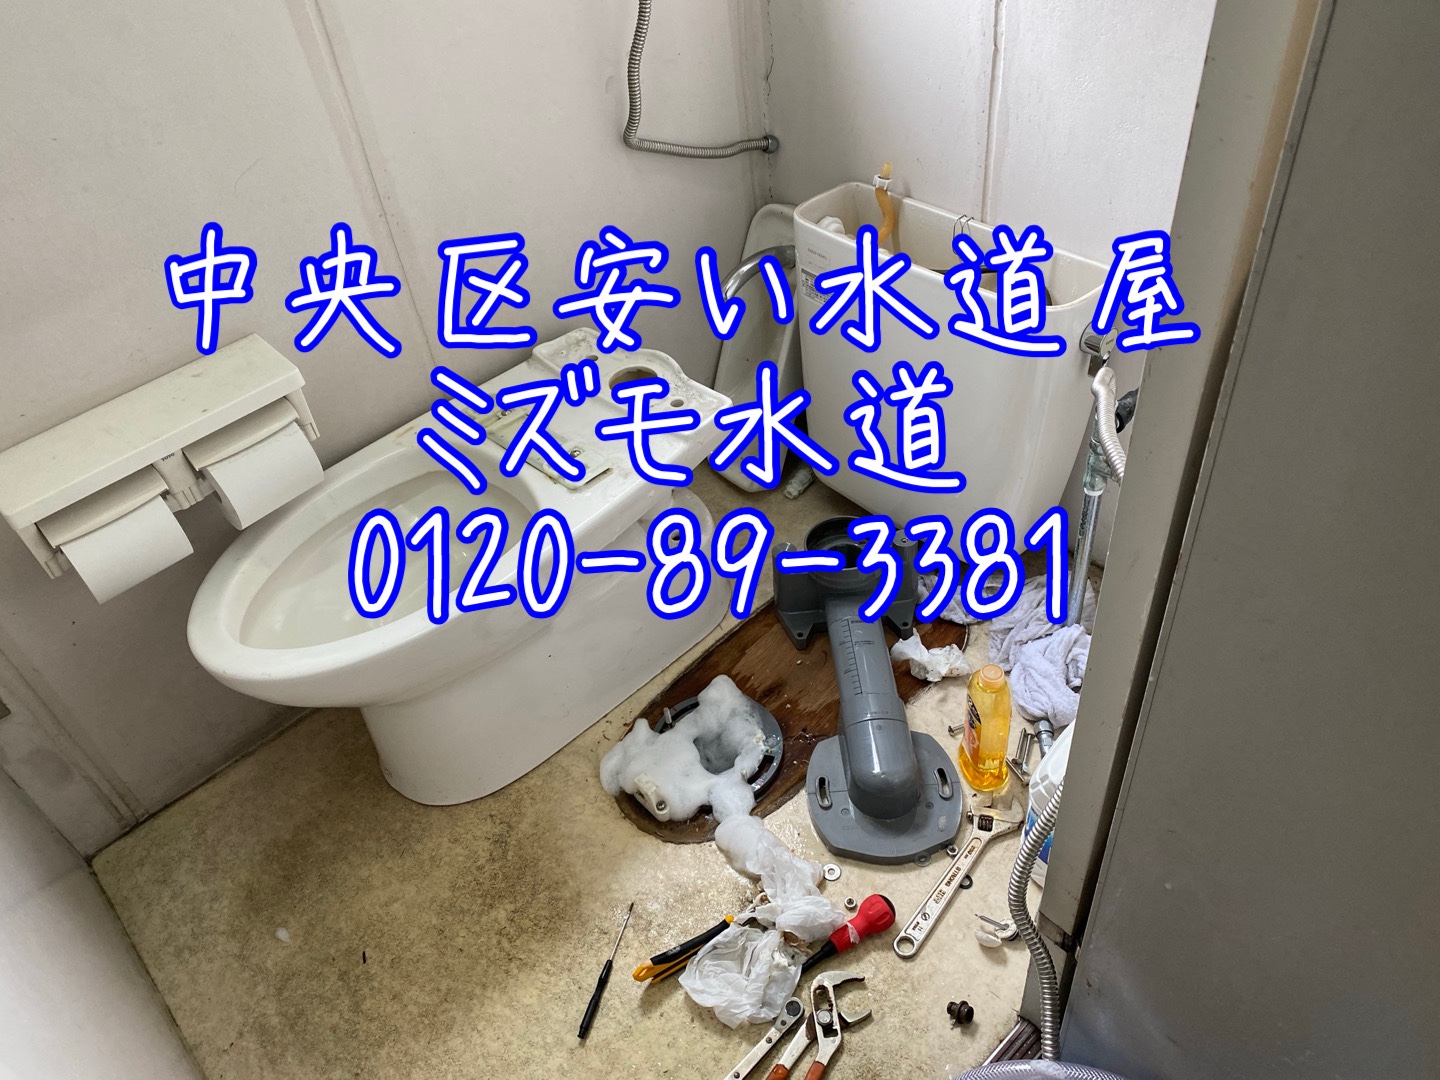 日本橋便器脱着トイレつまり修理